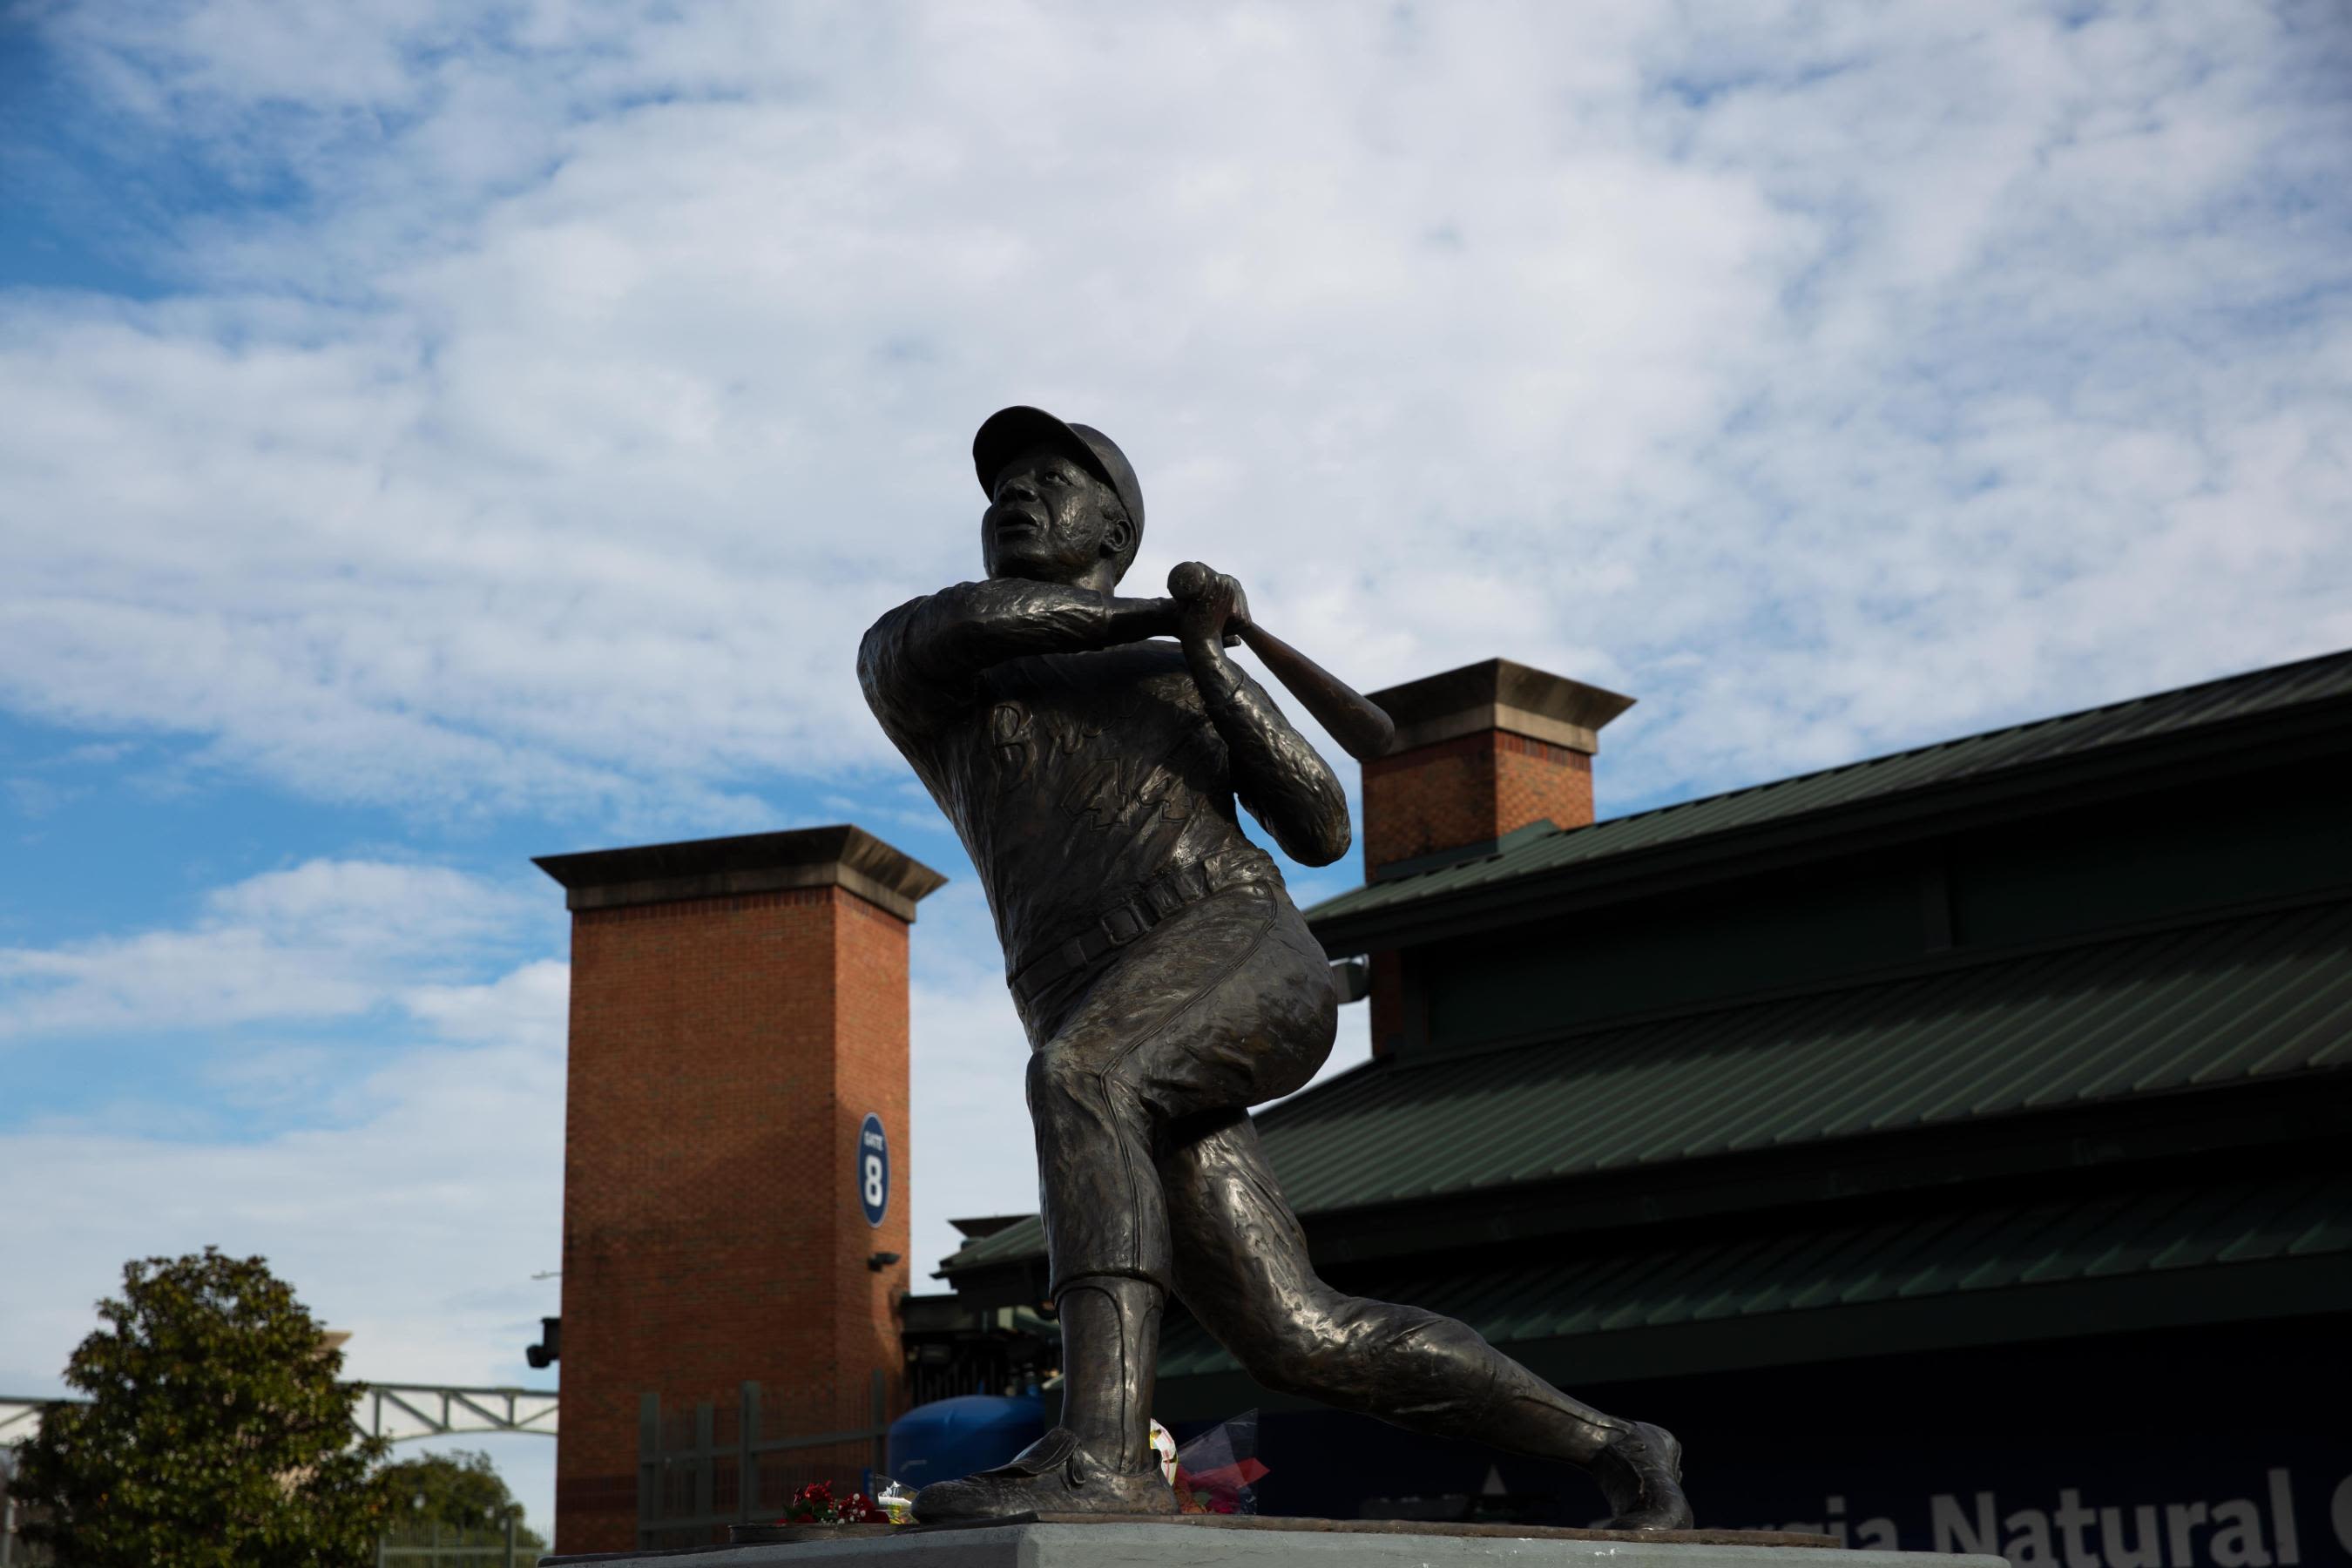 Hank Aaron's baseball legacy helps elevate World Series - Los